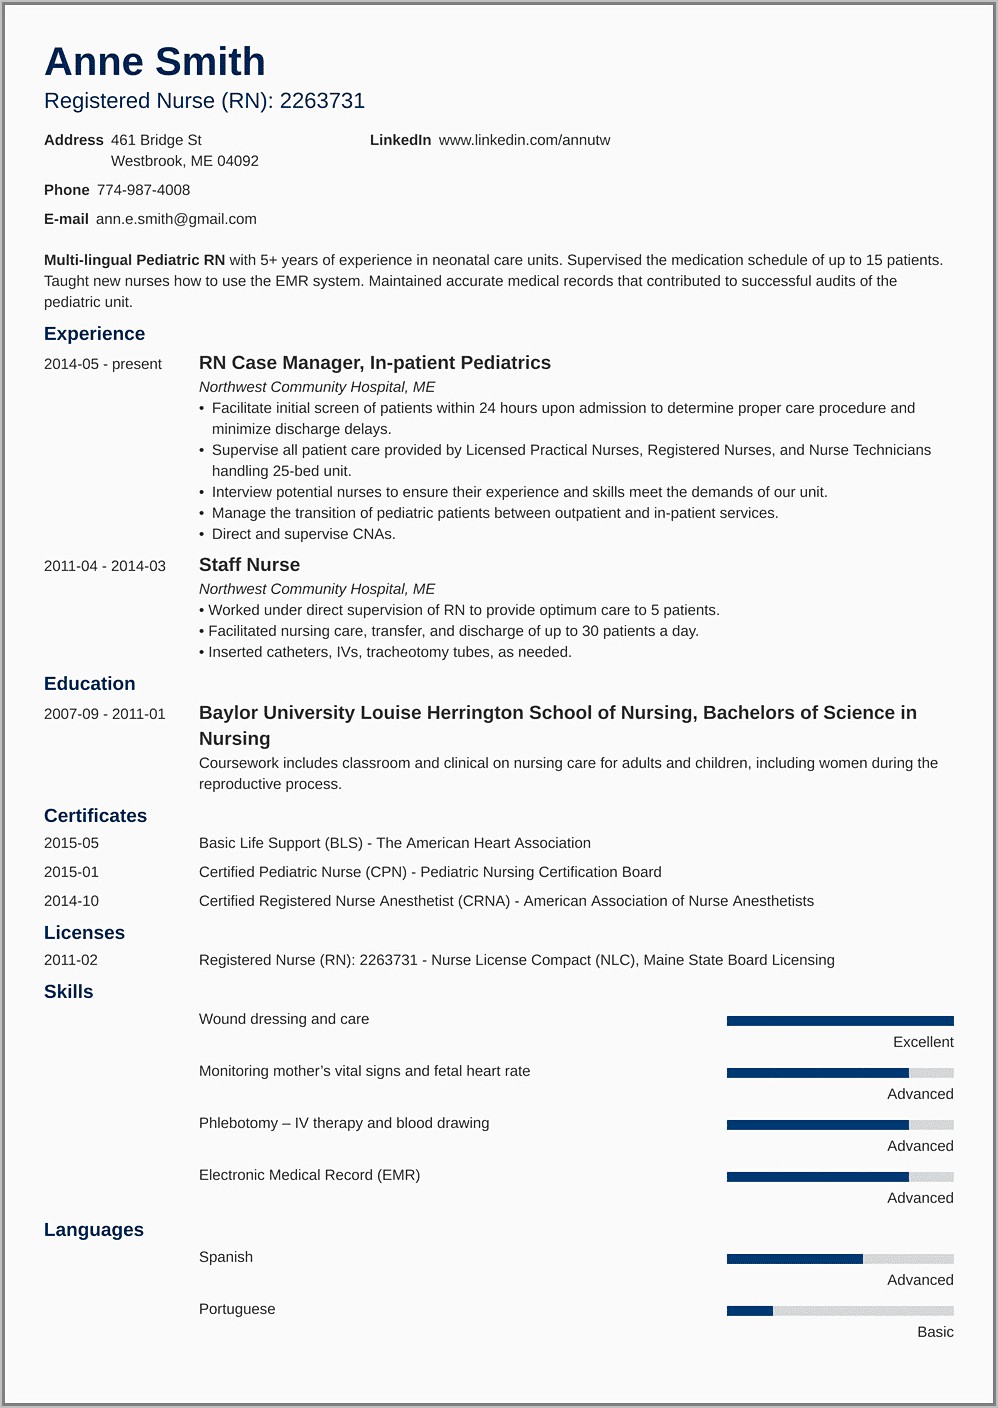 Nursing Resume Template Free Download